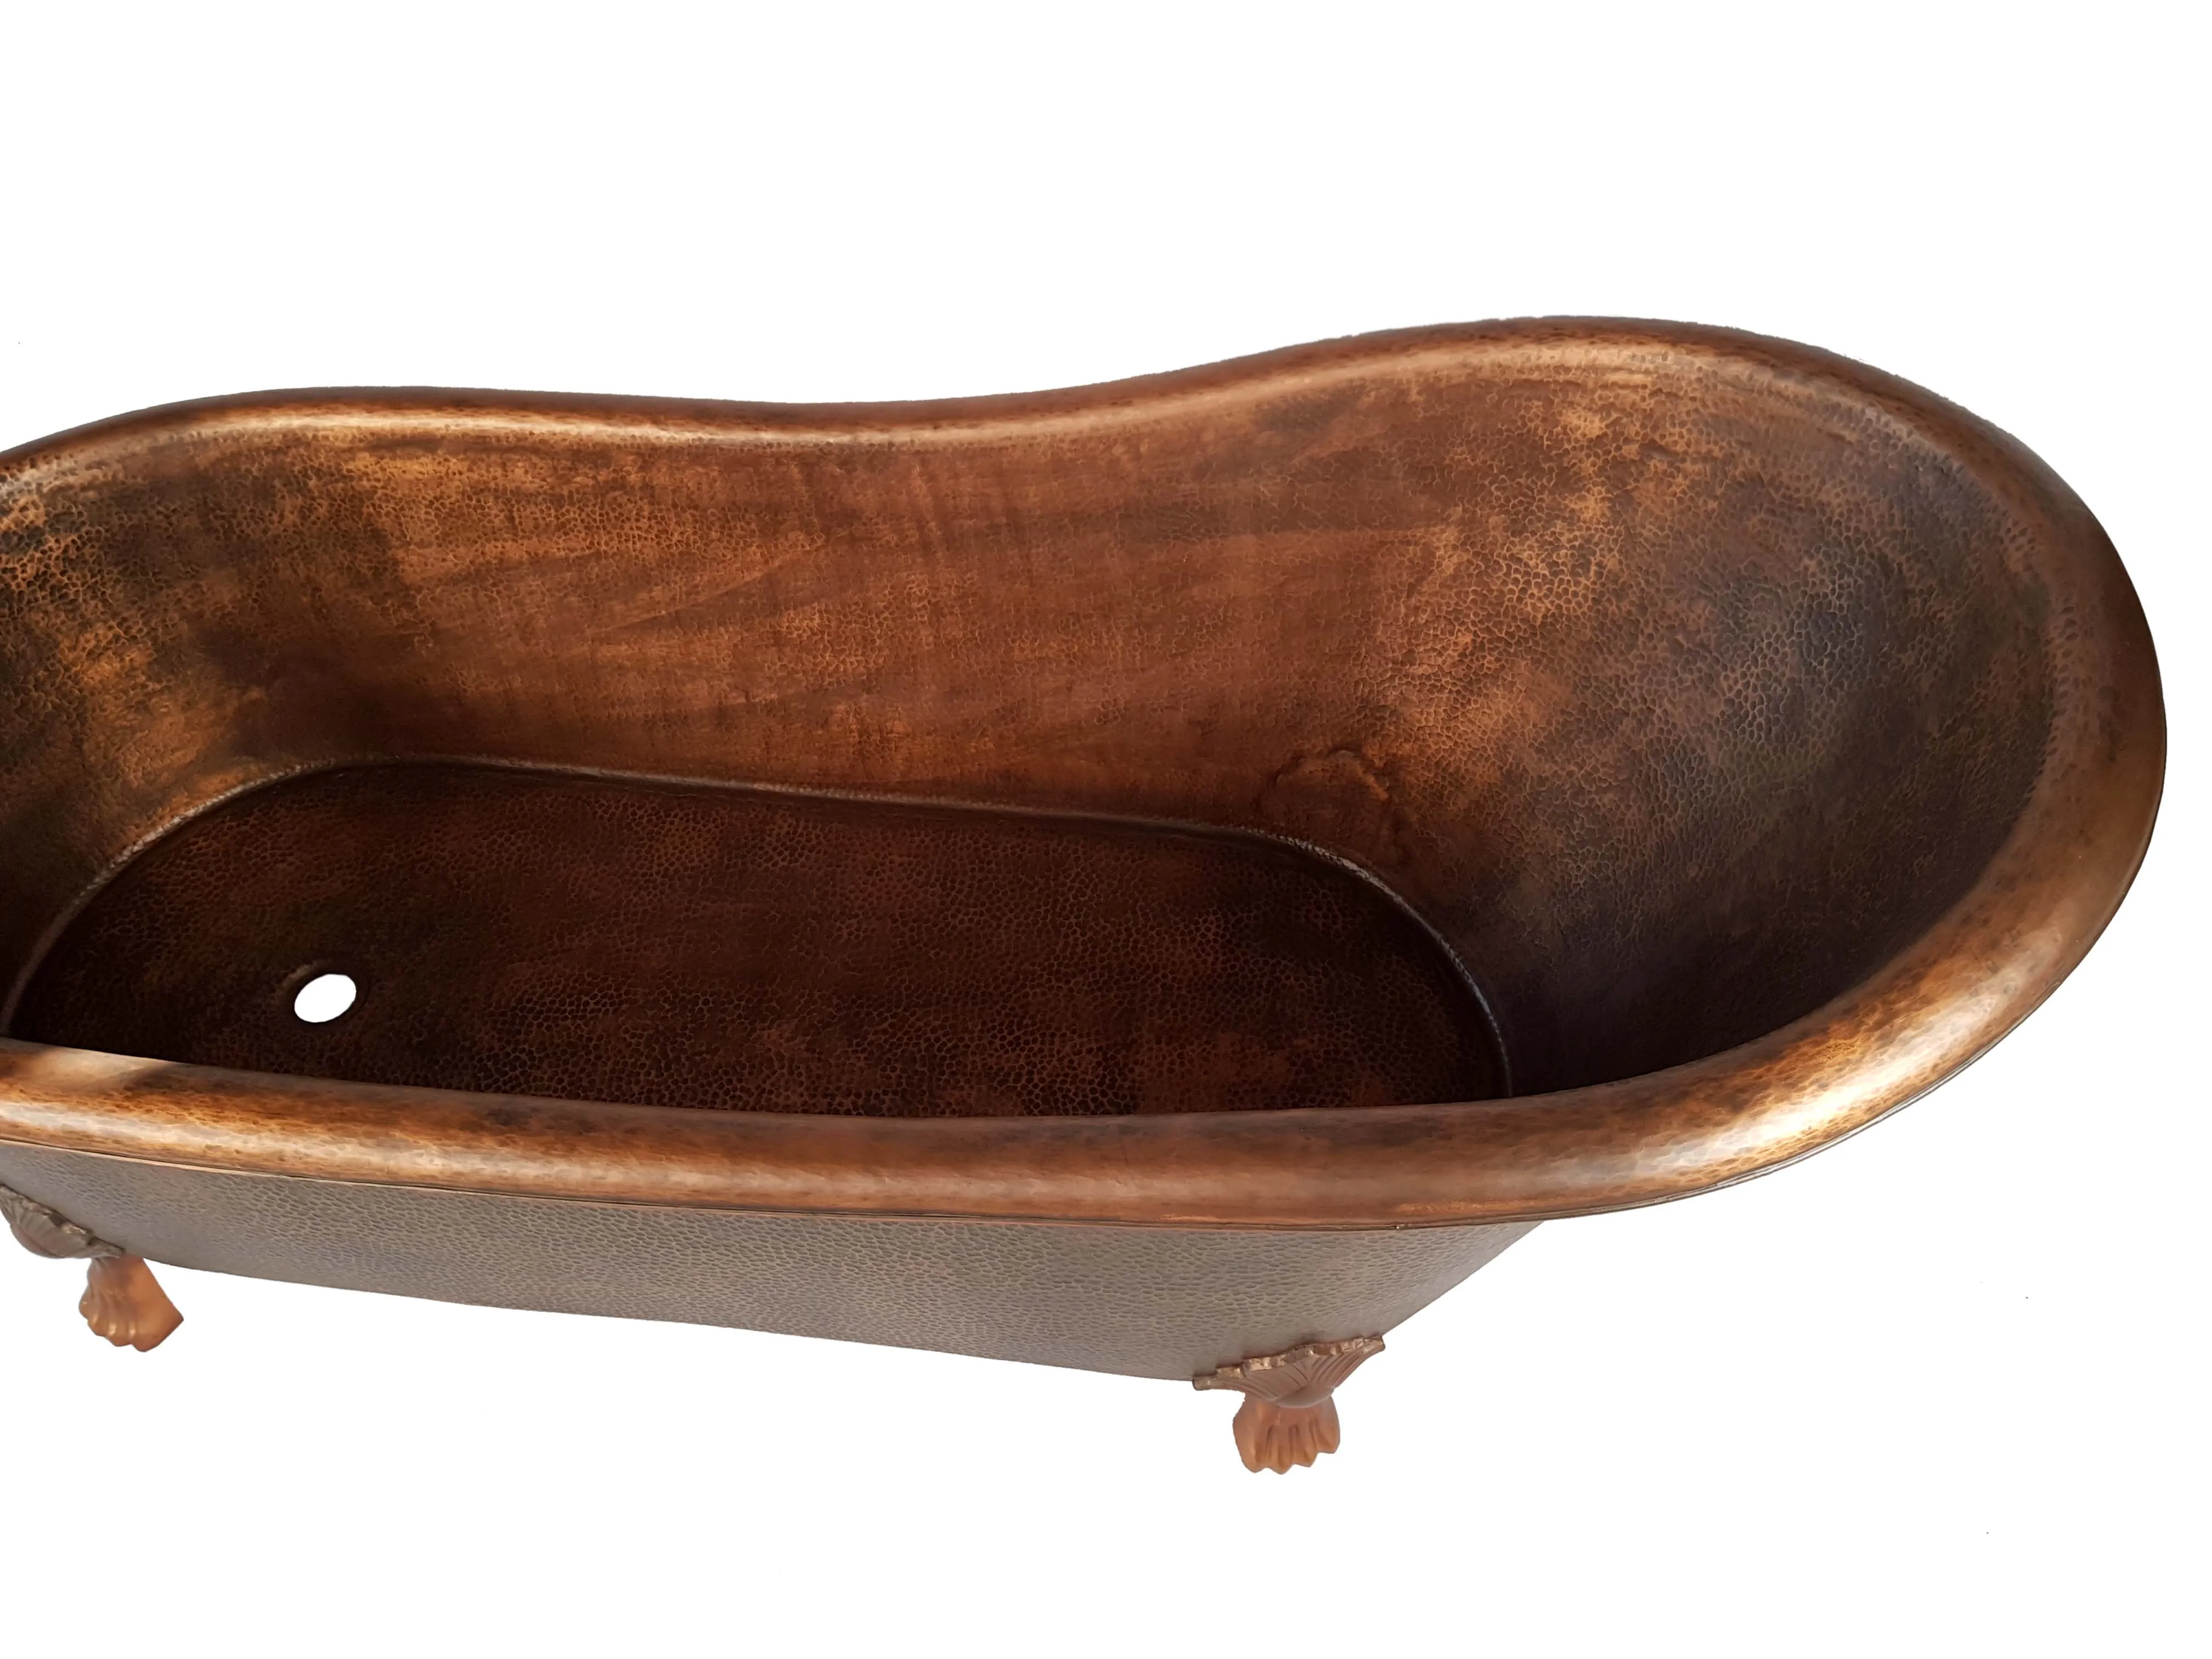 优质的老式实心铜浴缸价格具有竞争力